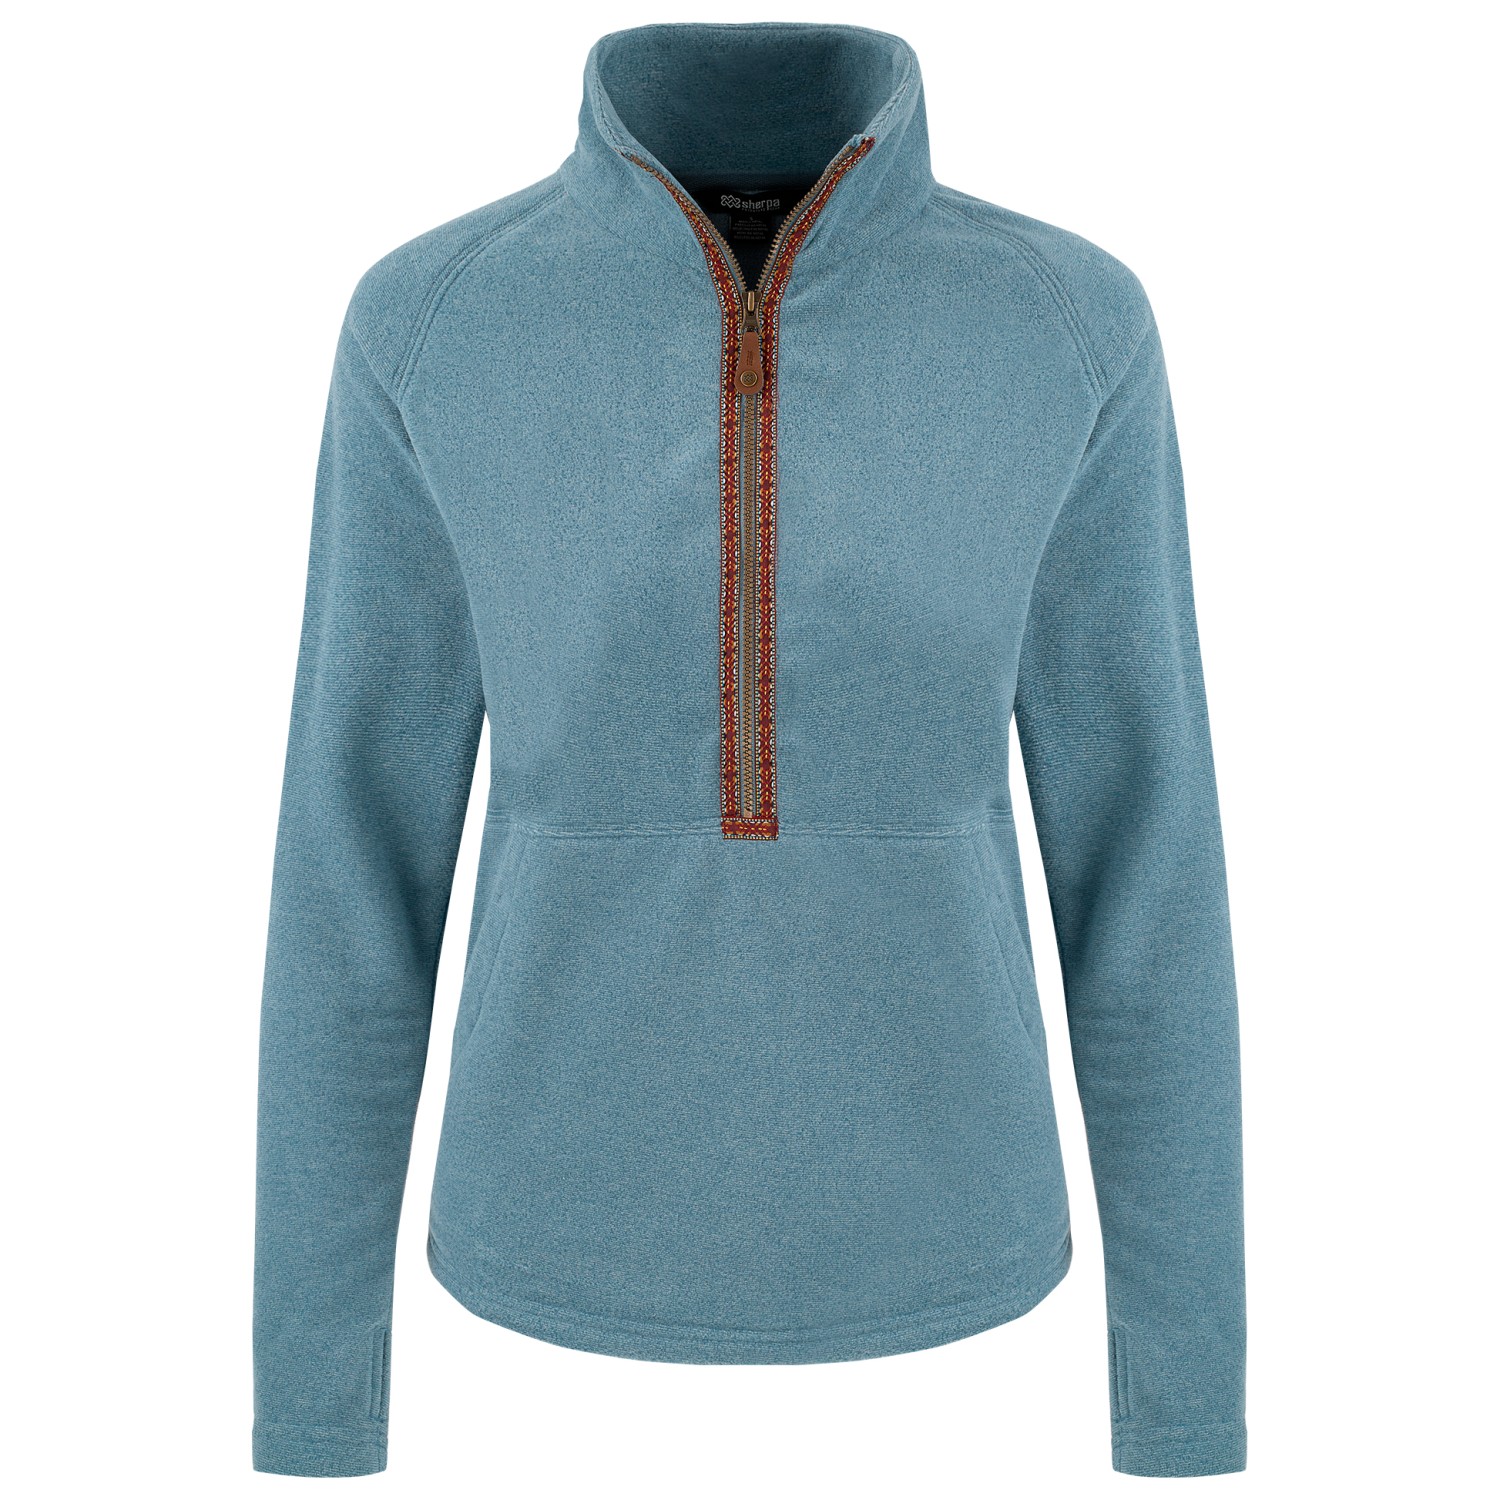 цена Флисовый свитер Sherpa Women's Rolpa Eco 1/2 Zip, цвет Light Haze